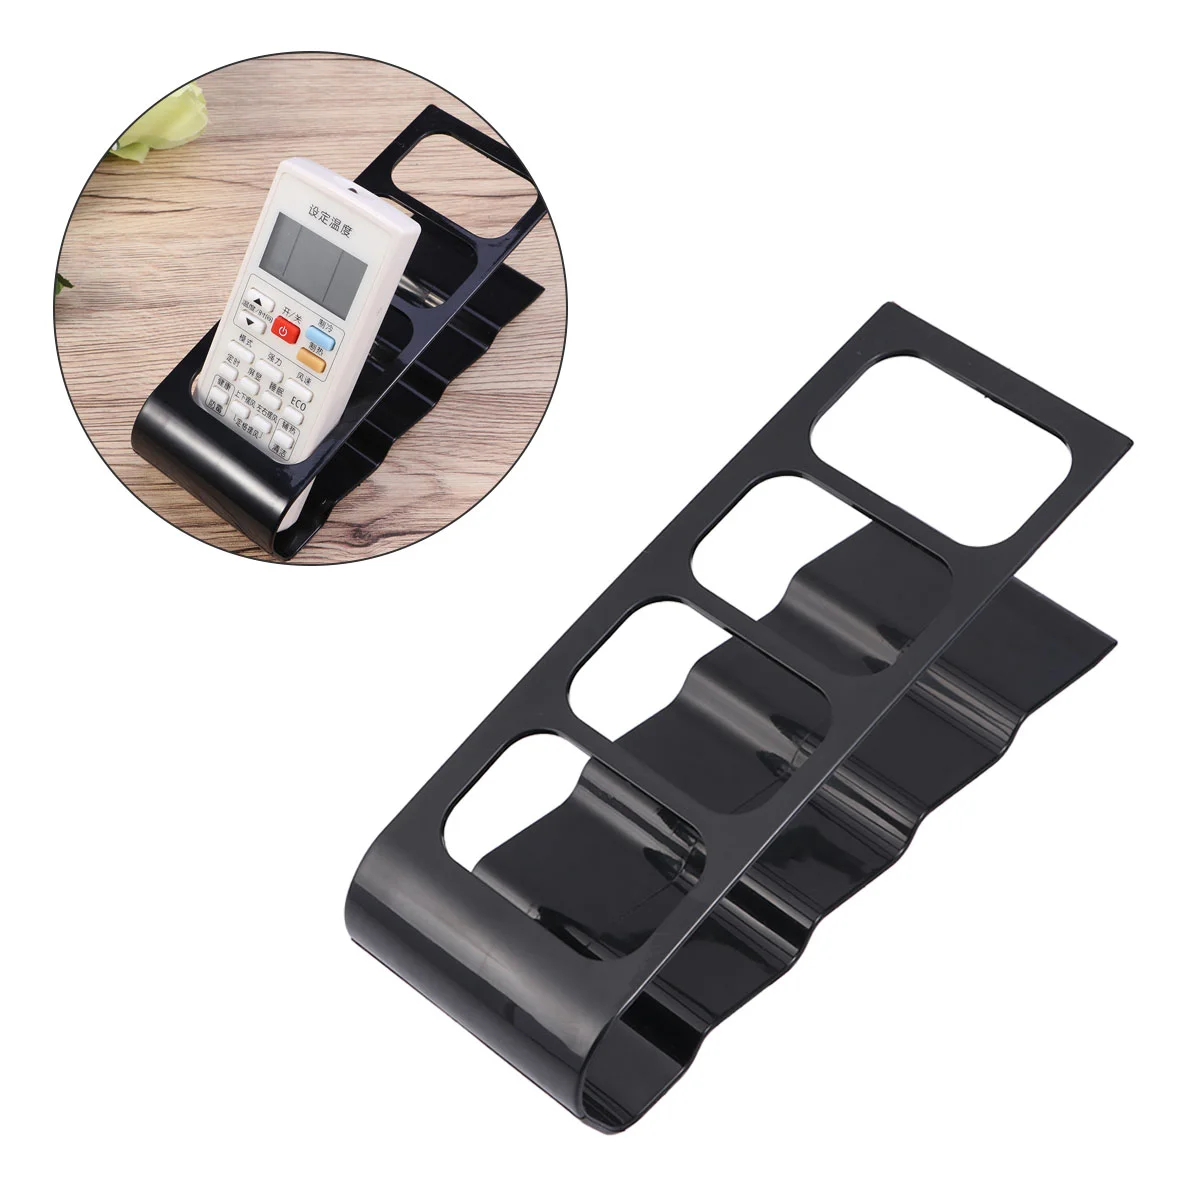 

4 Frame /DVD/VCR Remote Remote Organiser Storage Rack Holder Mobile Phone Stand (Black)